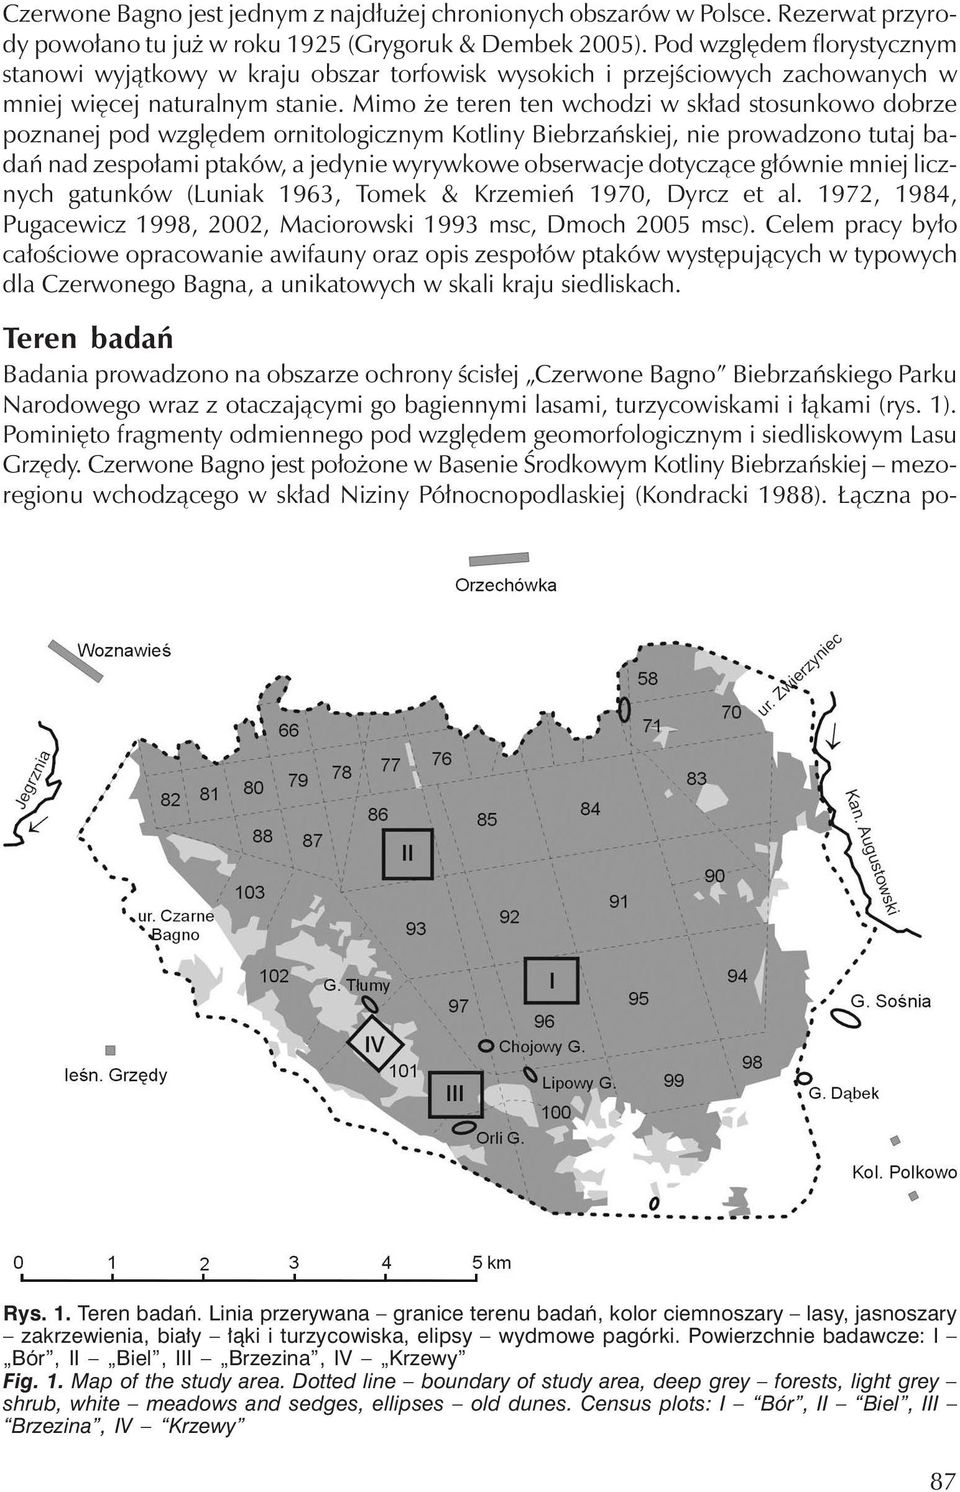 Mimo że teren ten wchodzi w skład stosunkowo dobrze poznanej pod względemornitologicznymkotliny Biebrzańskiej, nie prowadzono tutaj badań nad zespołami ptaków, a jedynie wyrywkowe obserwacje